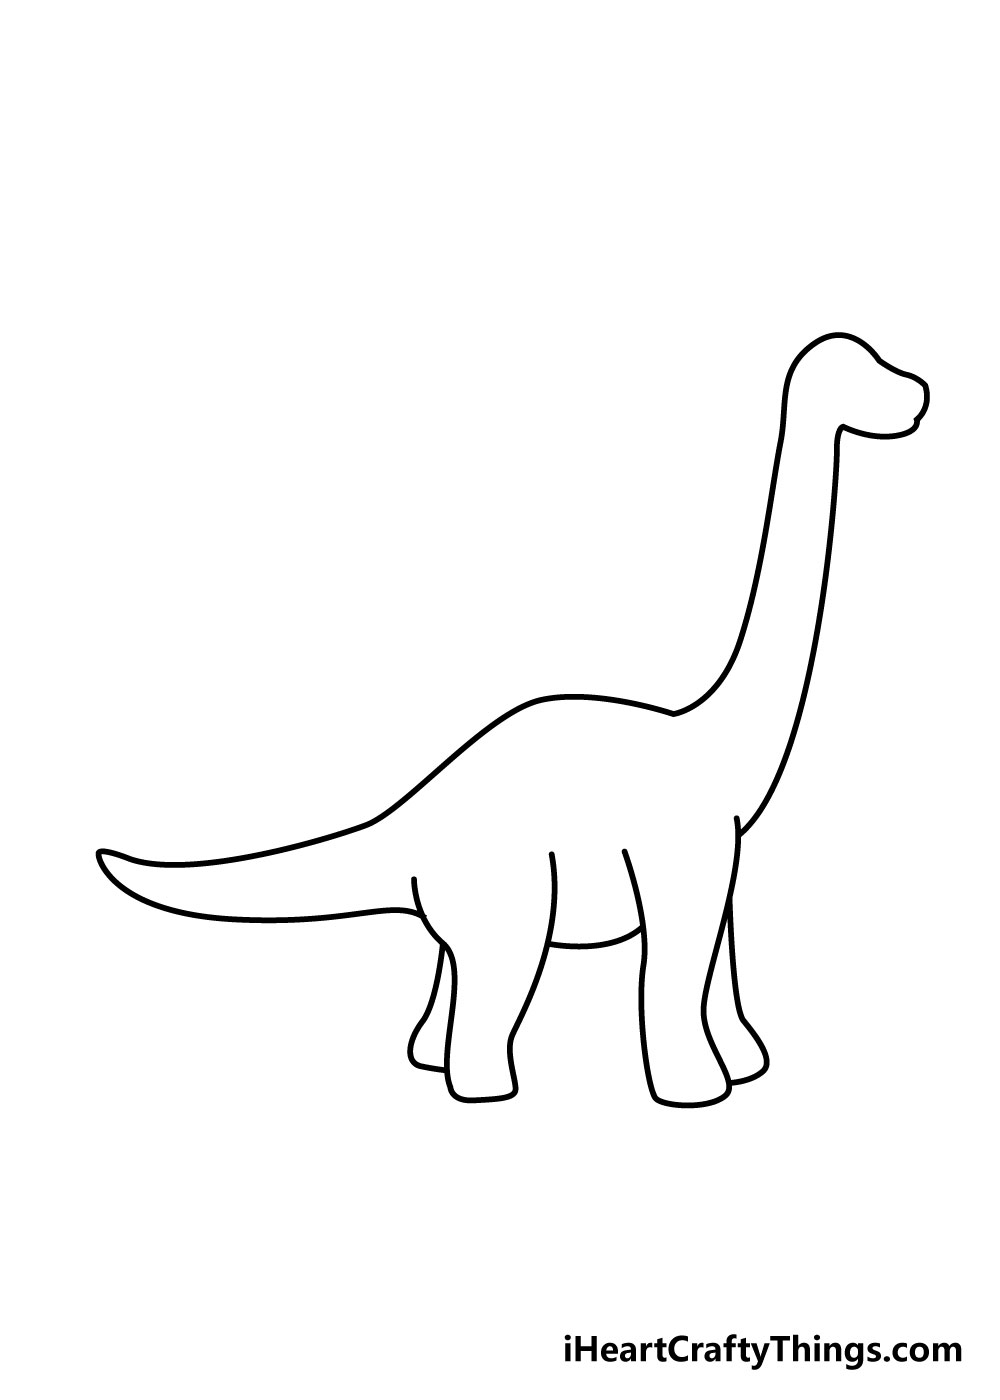 How to draw a dinosaur 6 - Hướng dẫn cách vẽ con khủng long đơn giản với 8 bước cơ bản